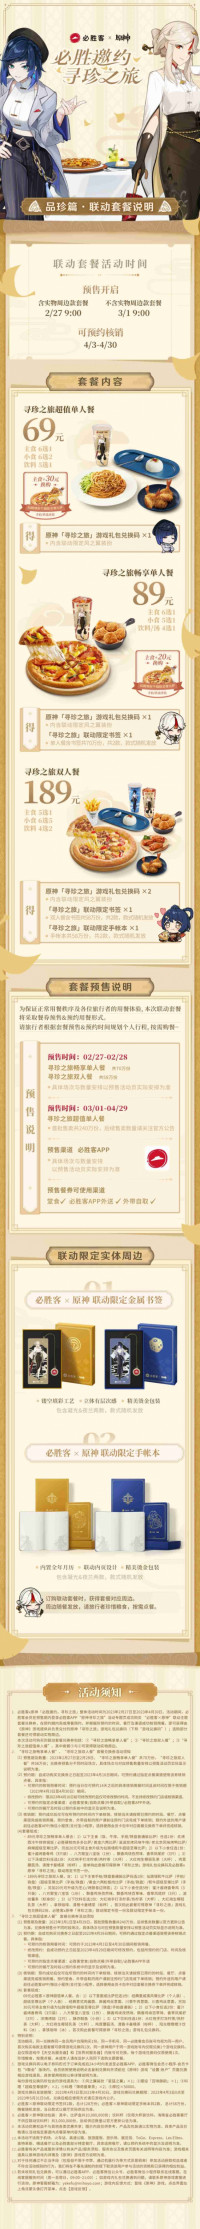 必胜客×原神联动套餐预售将于2月27日开启!